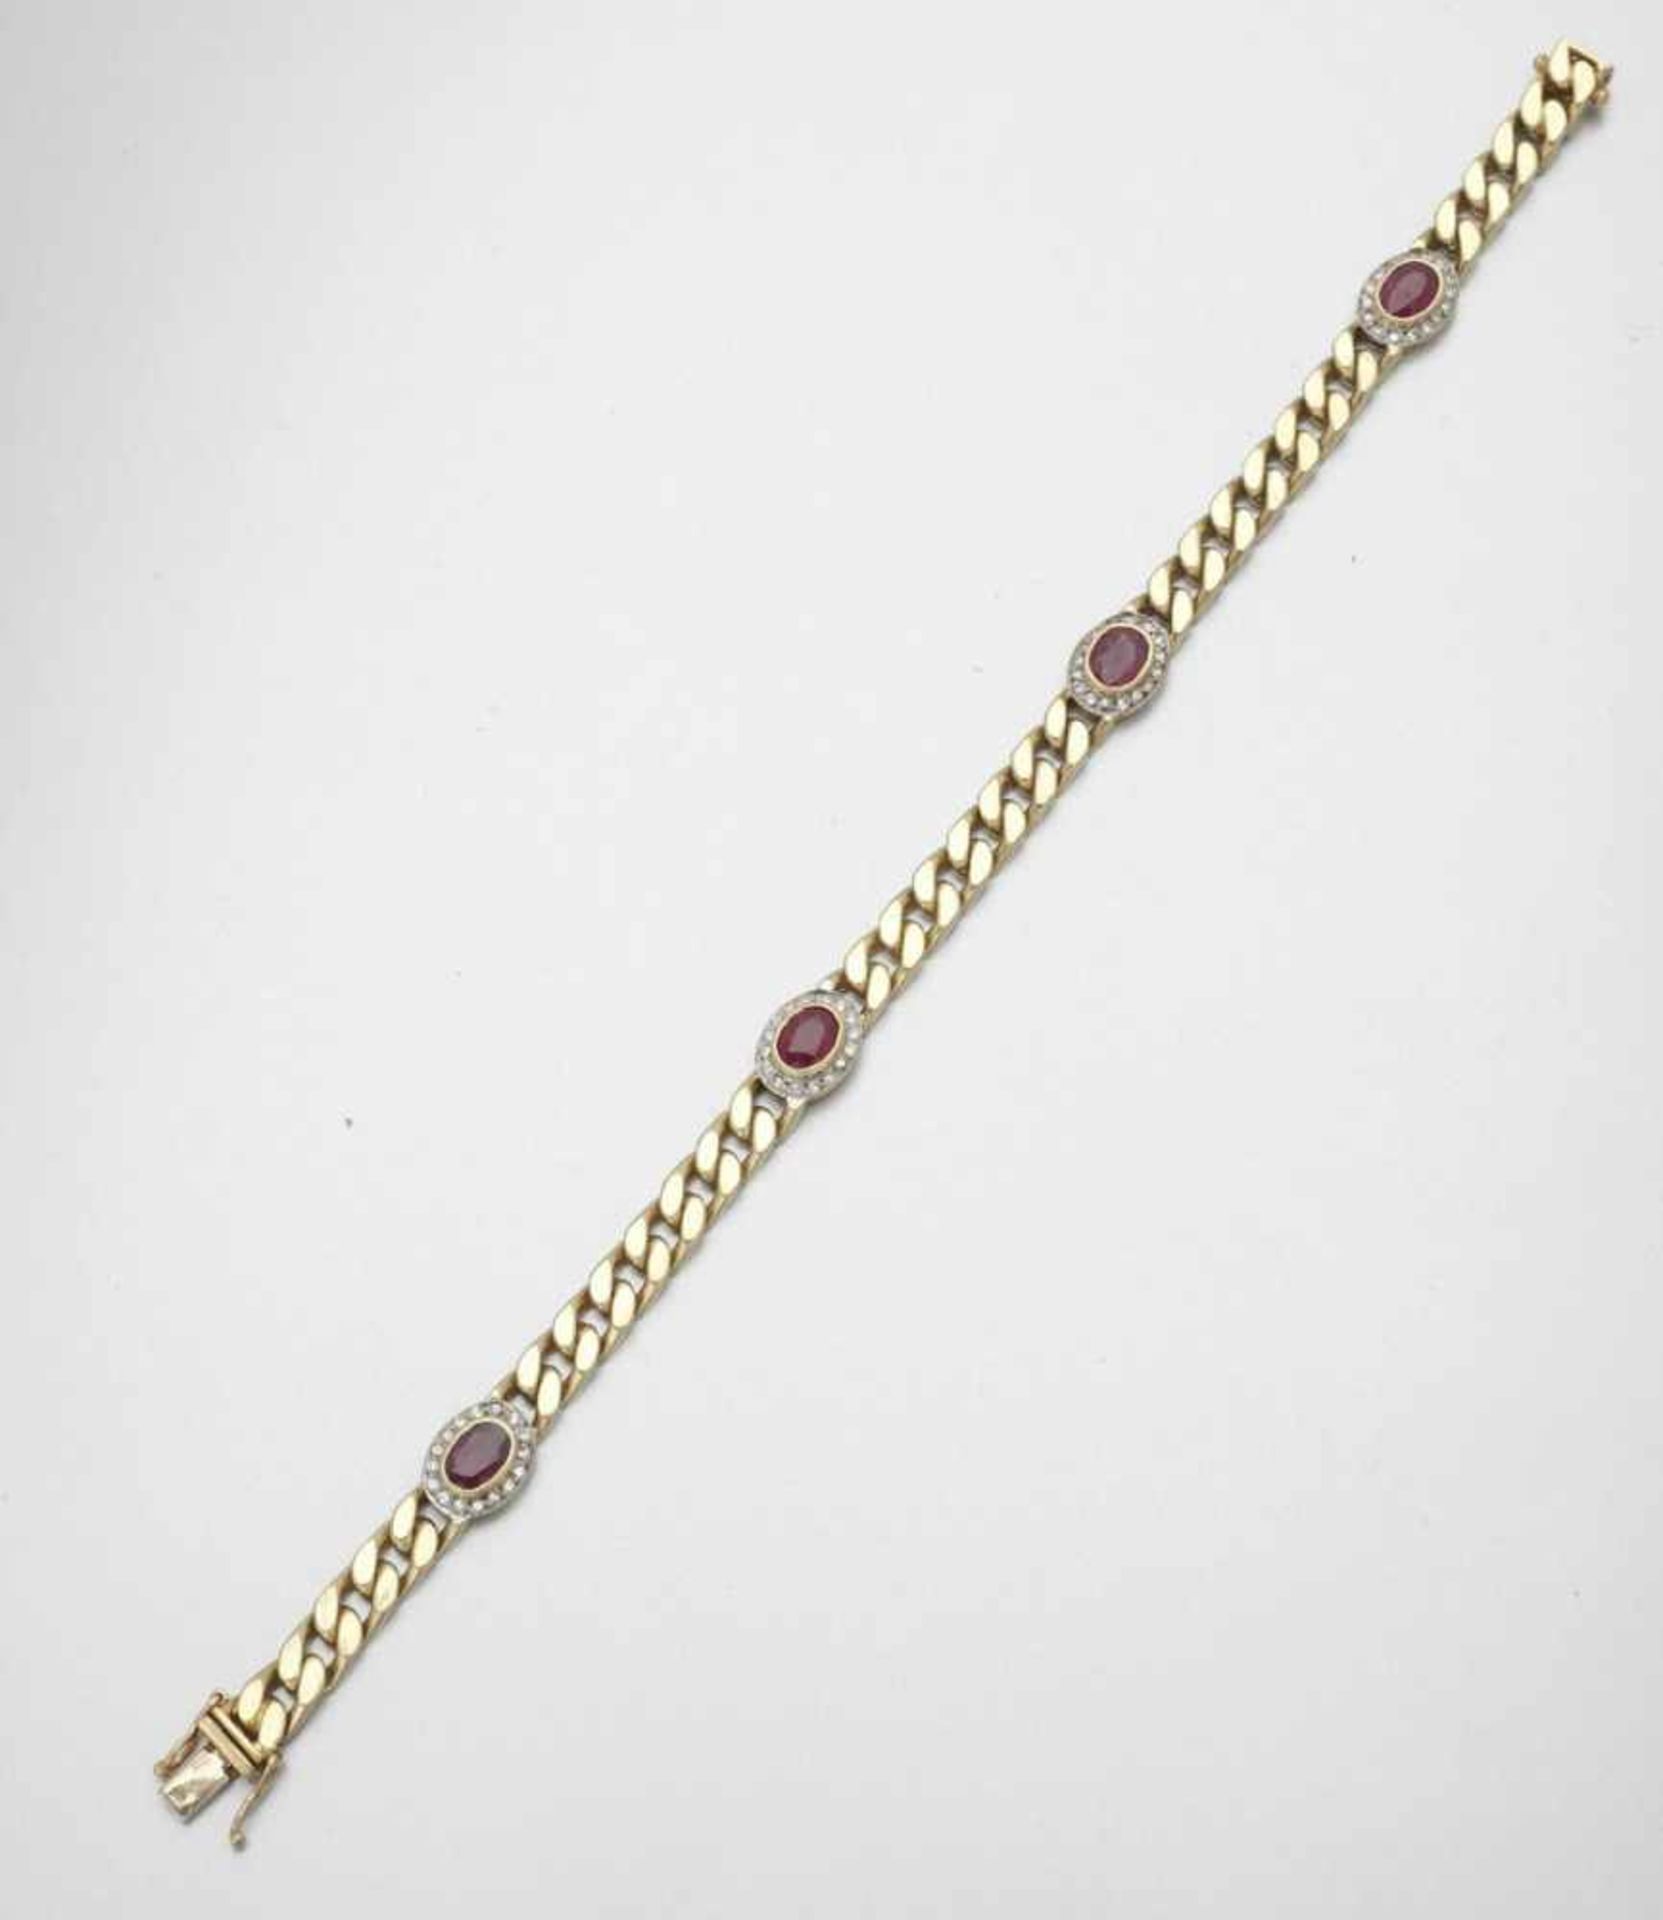 Rubin-Brillant-Armband 750er GG, gestemp. 4 Rubine im Ovalschliff zus. ca. 5 ct. Div. Brillanten - Image 2 of 2